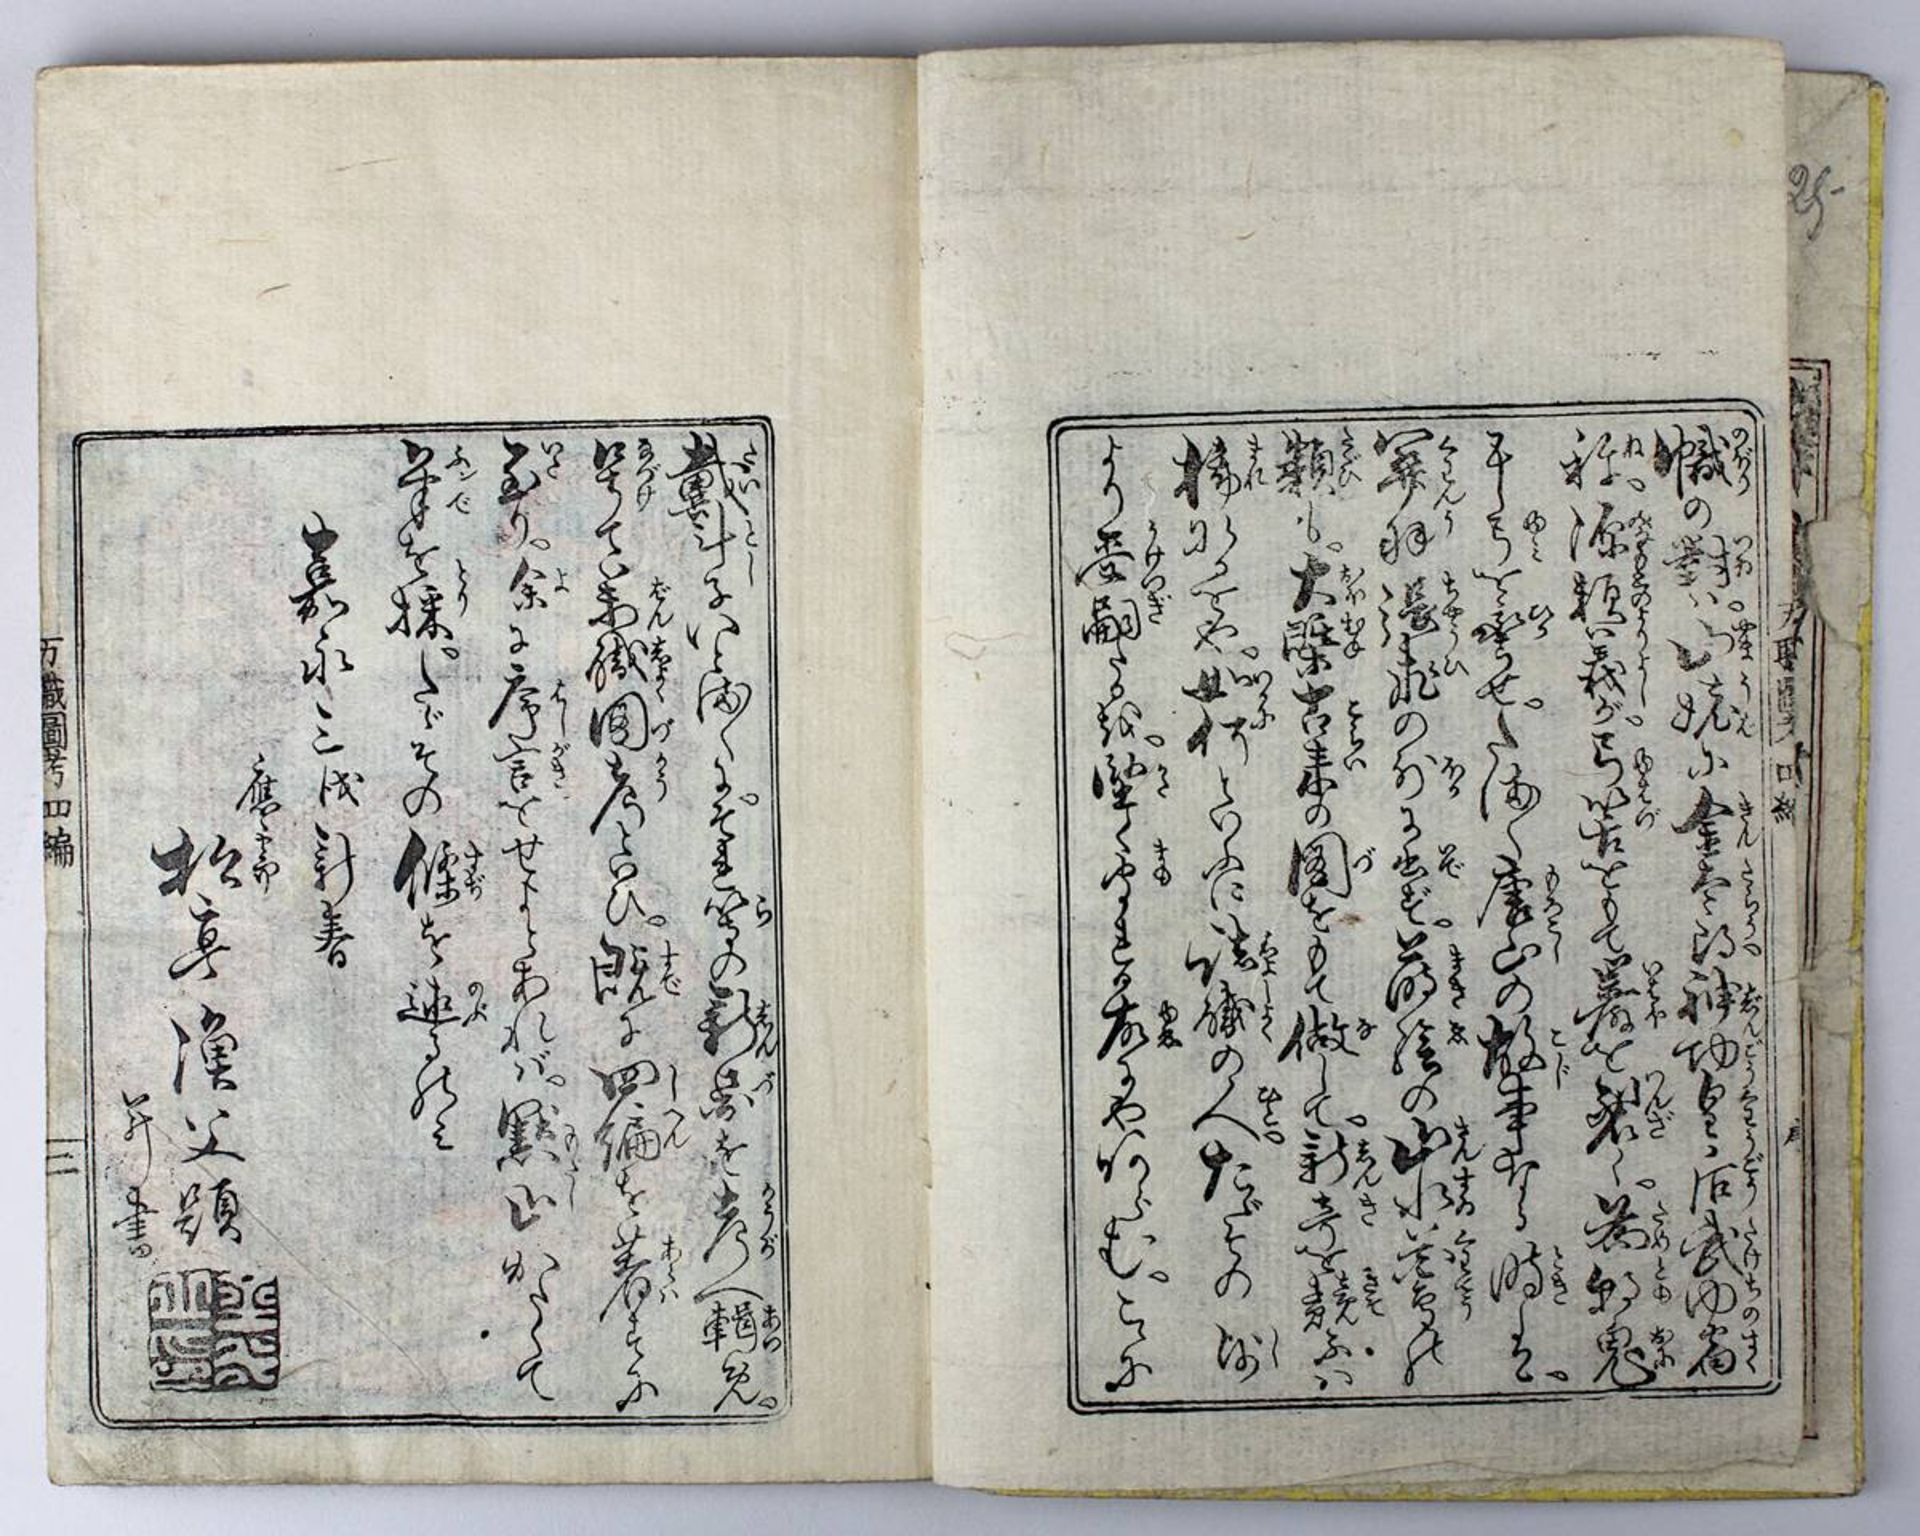 Katsushika Taito (aktiv Japan 1810 - 1853), Holzschnittbuch Banshoku zuko, Bd. 3 von insgesamt 5 - Bild 2 aus 7